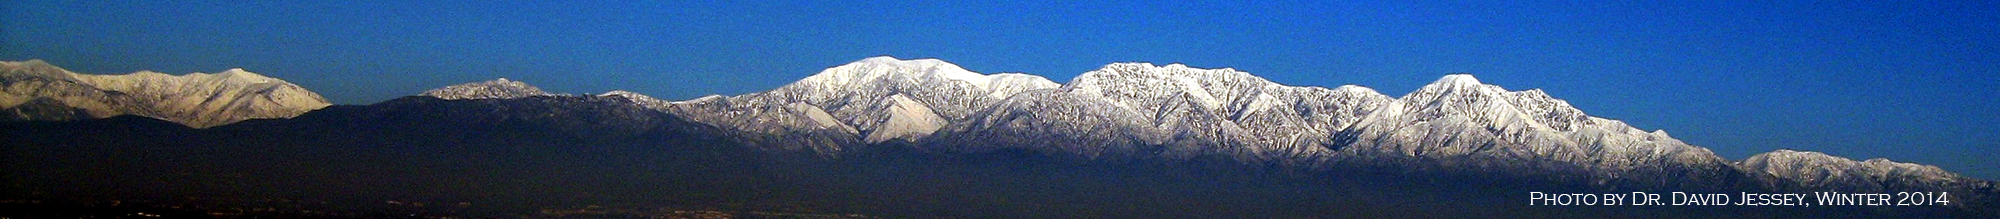 San Gabriel mountain